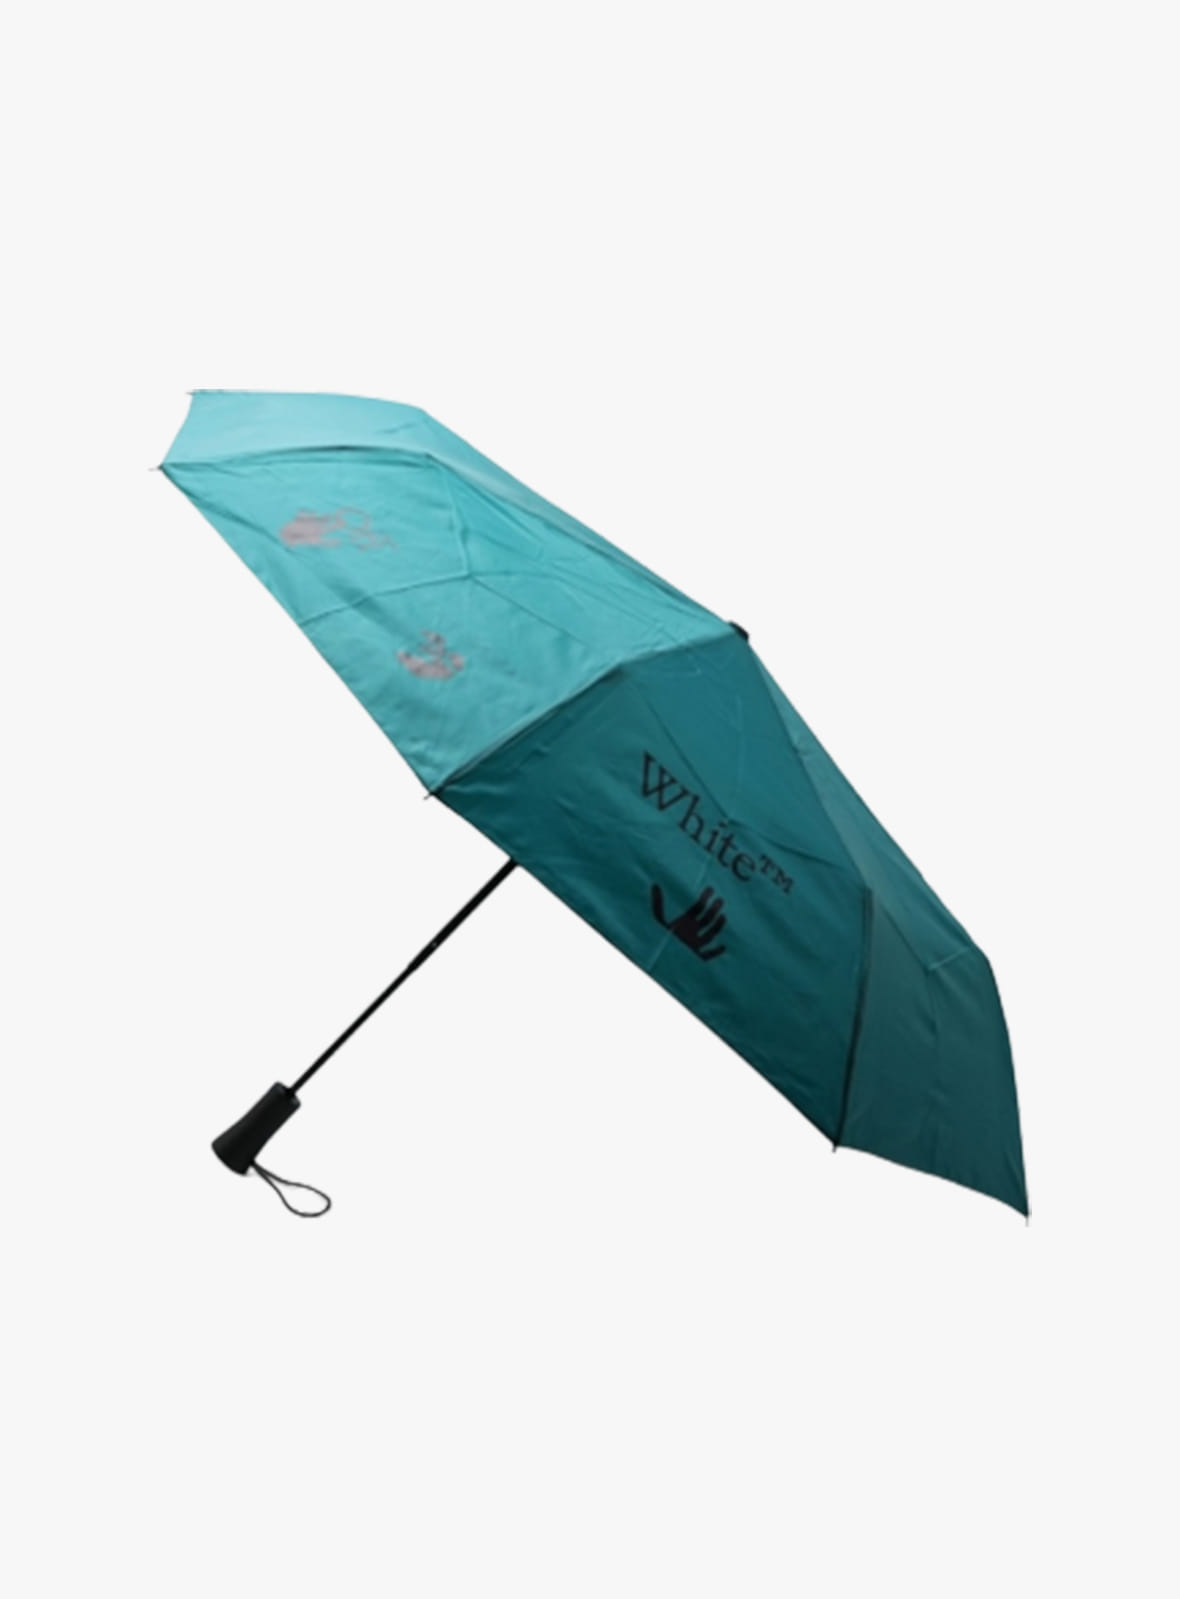 OFF WHITE HOME - Off-White Small petroleum blue umbrella with logo printOHZG003G22FAB001